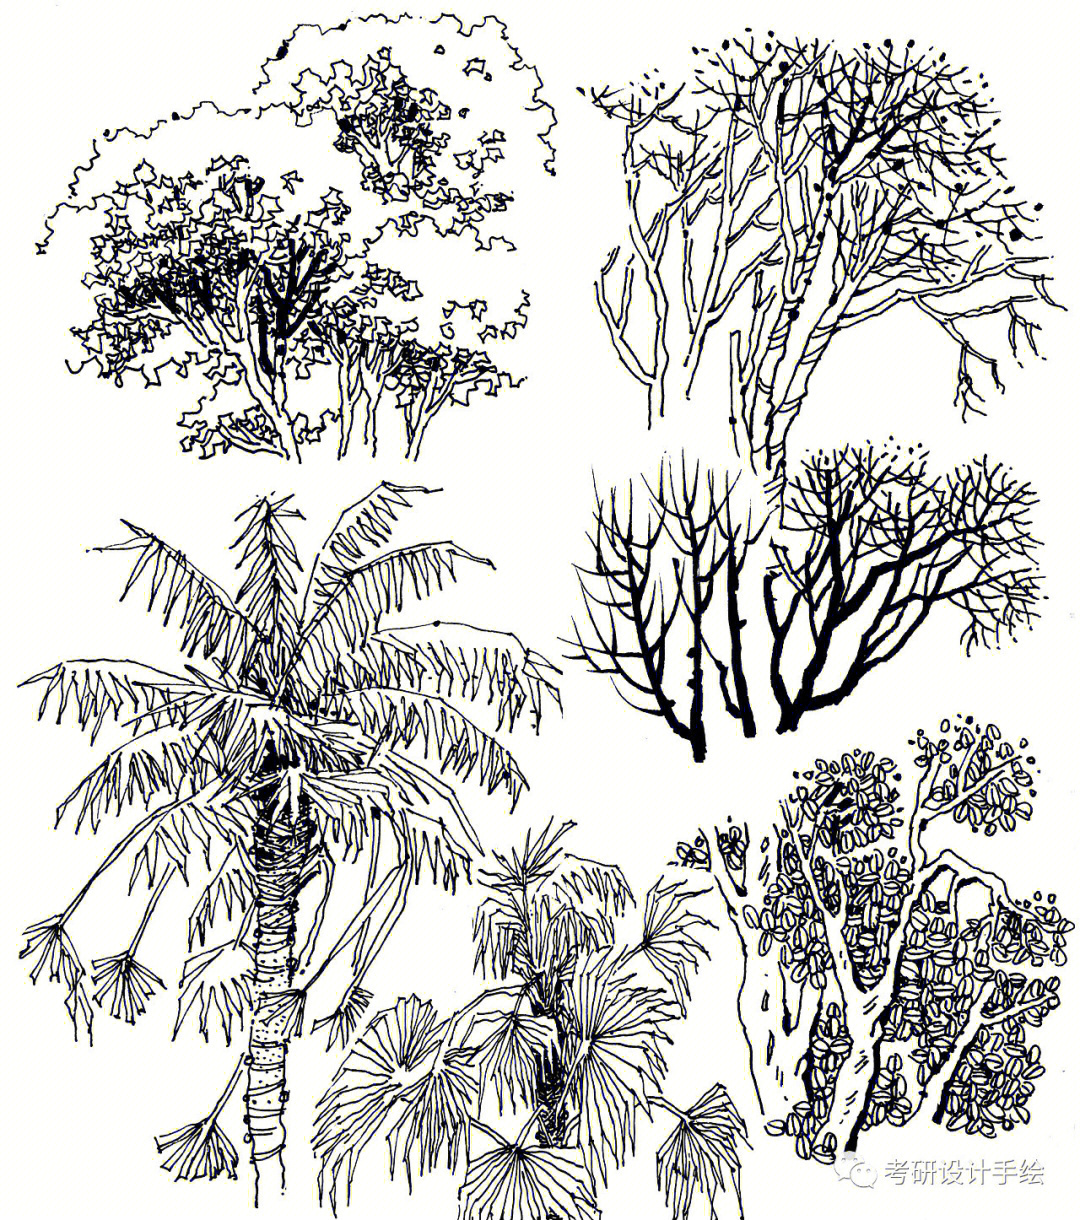 特色植物:丰富画面,根据平面选择表达a这几张植物素材刻画很复杂,画